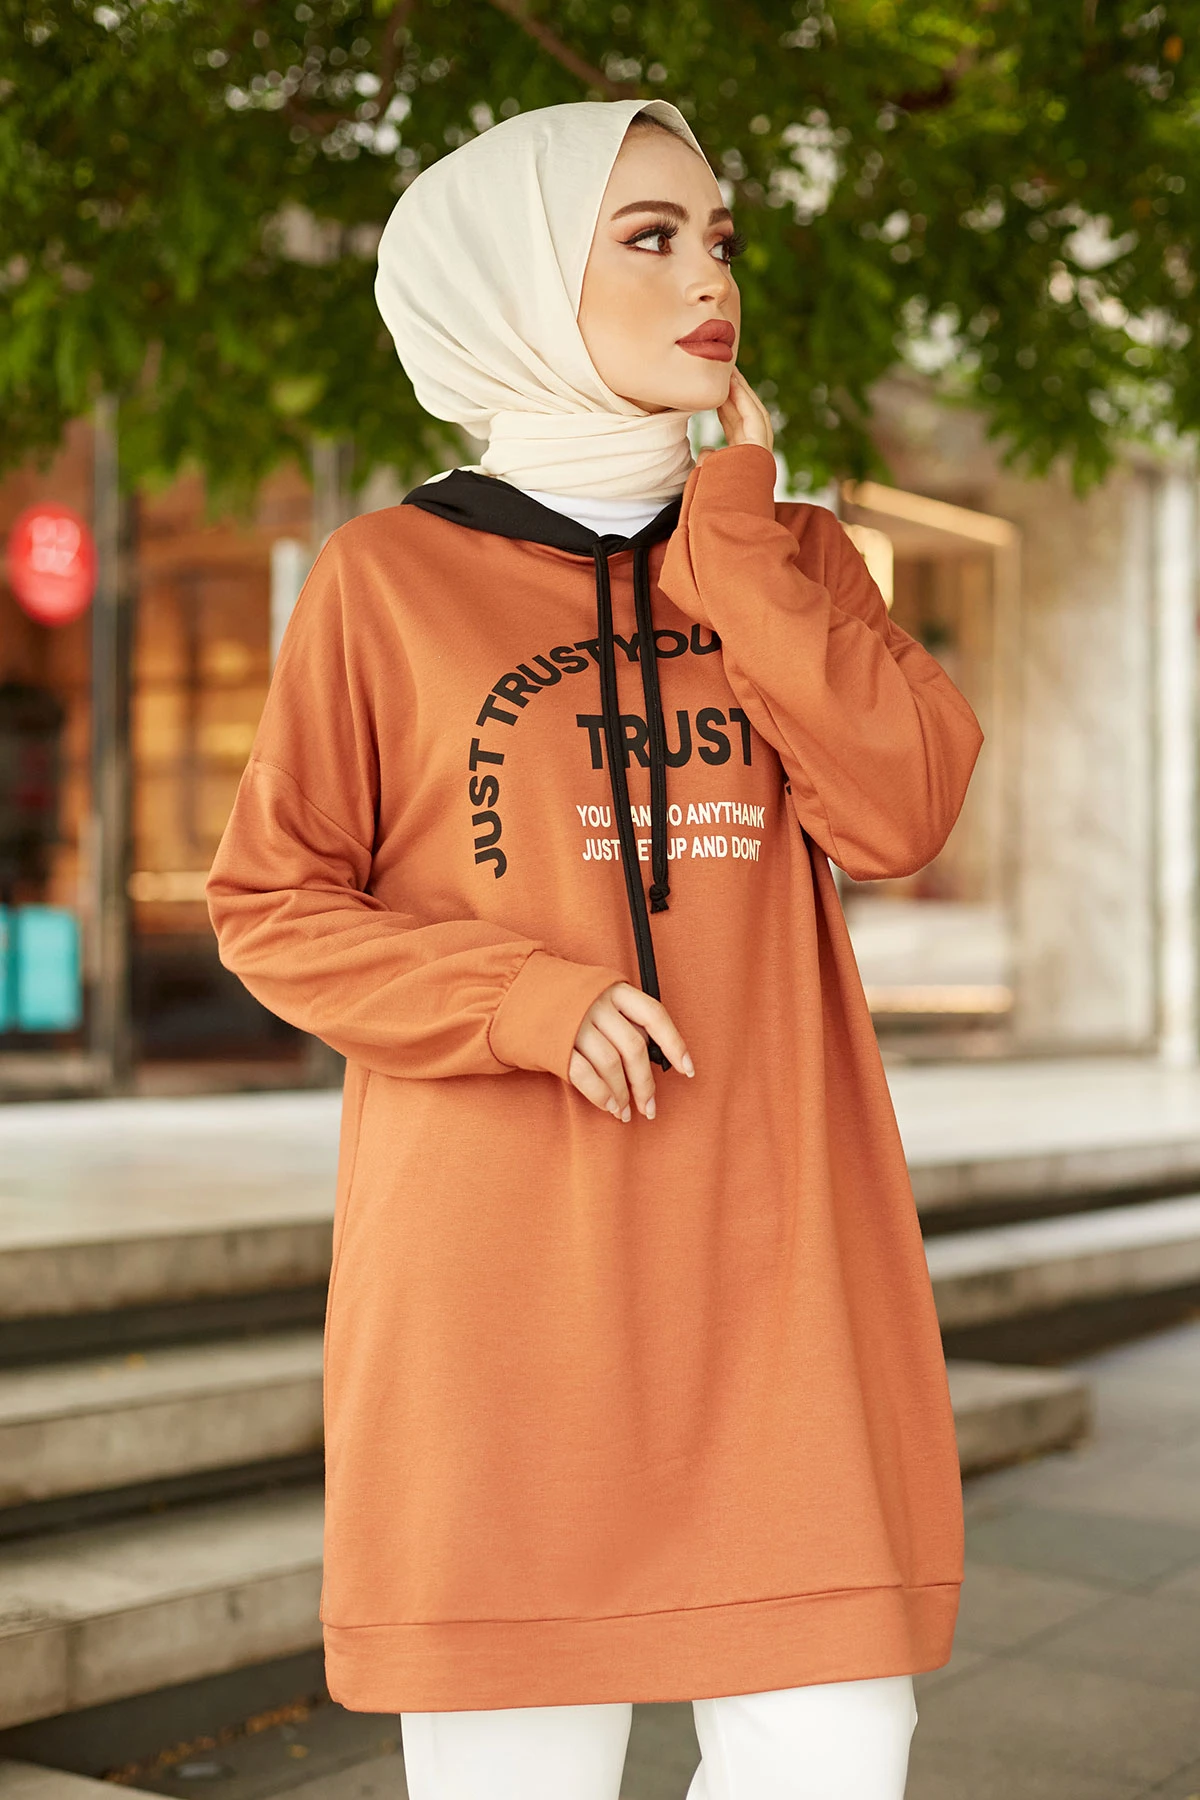 Спортивная Туника Trust Sweat, хиджаб, одежда, хиджаб, костюм, Abaya женская мусульманская одежда, повседневное стильное мусульманское платье, бесп...